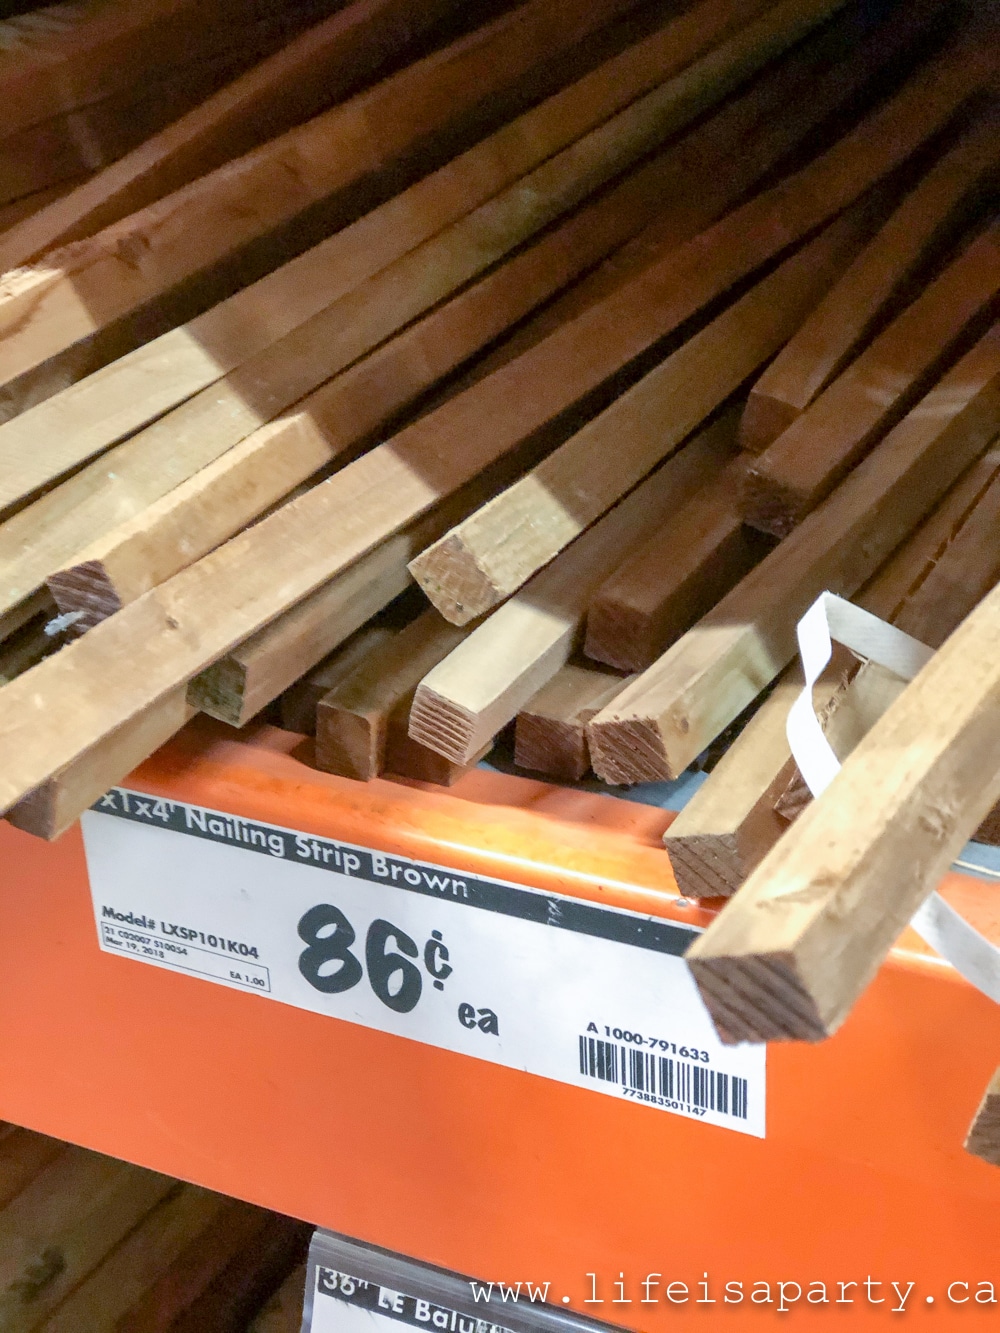 Wood nailing strips